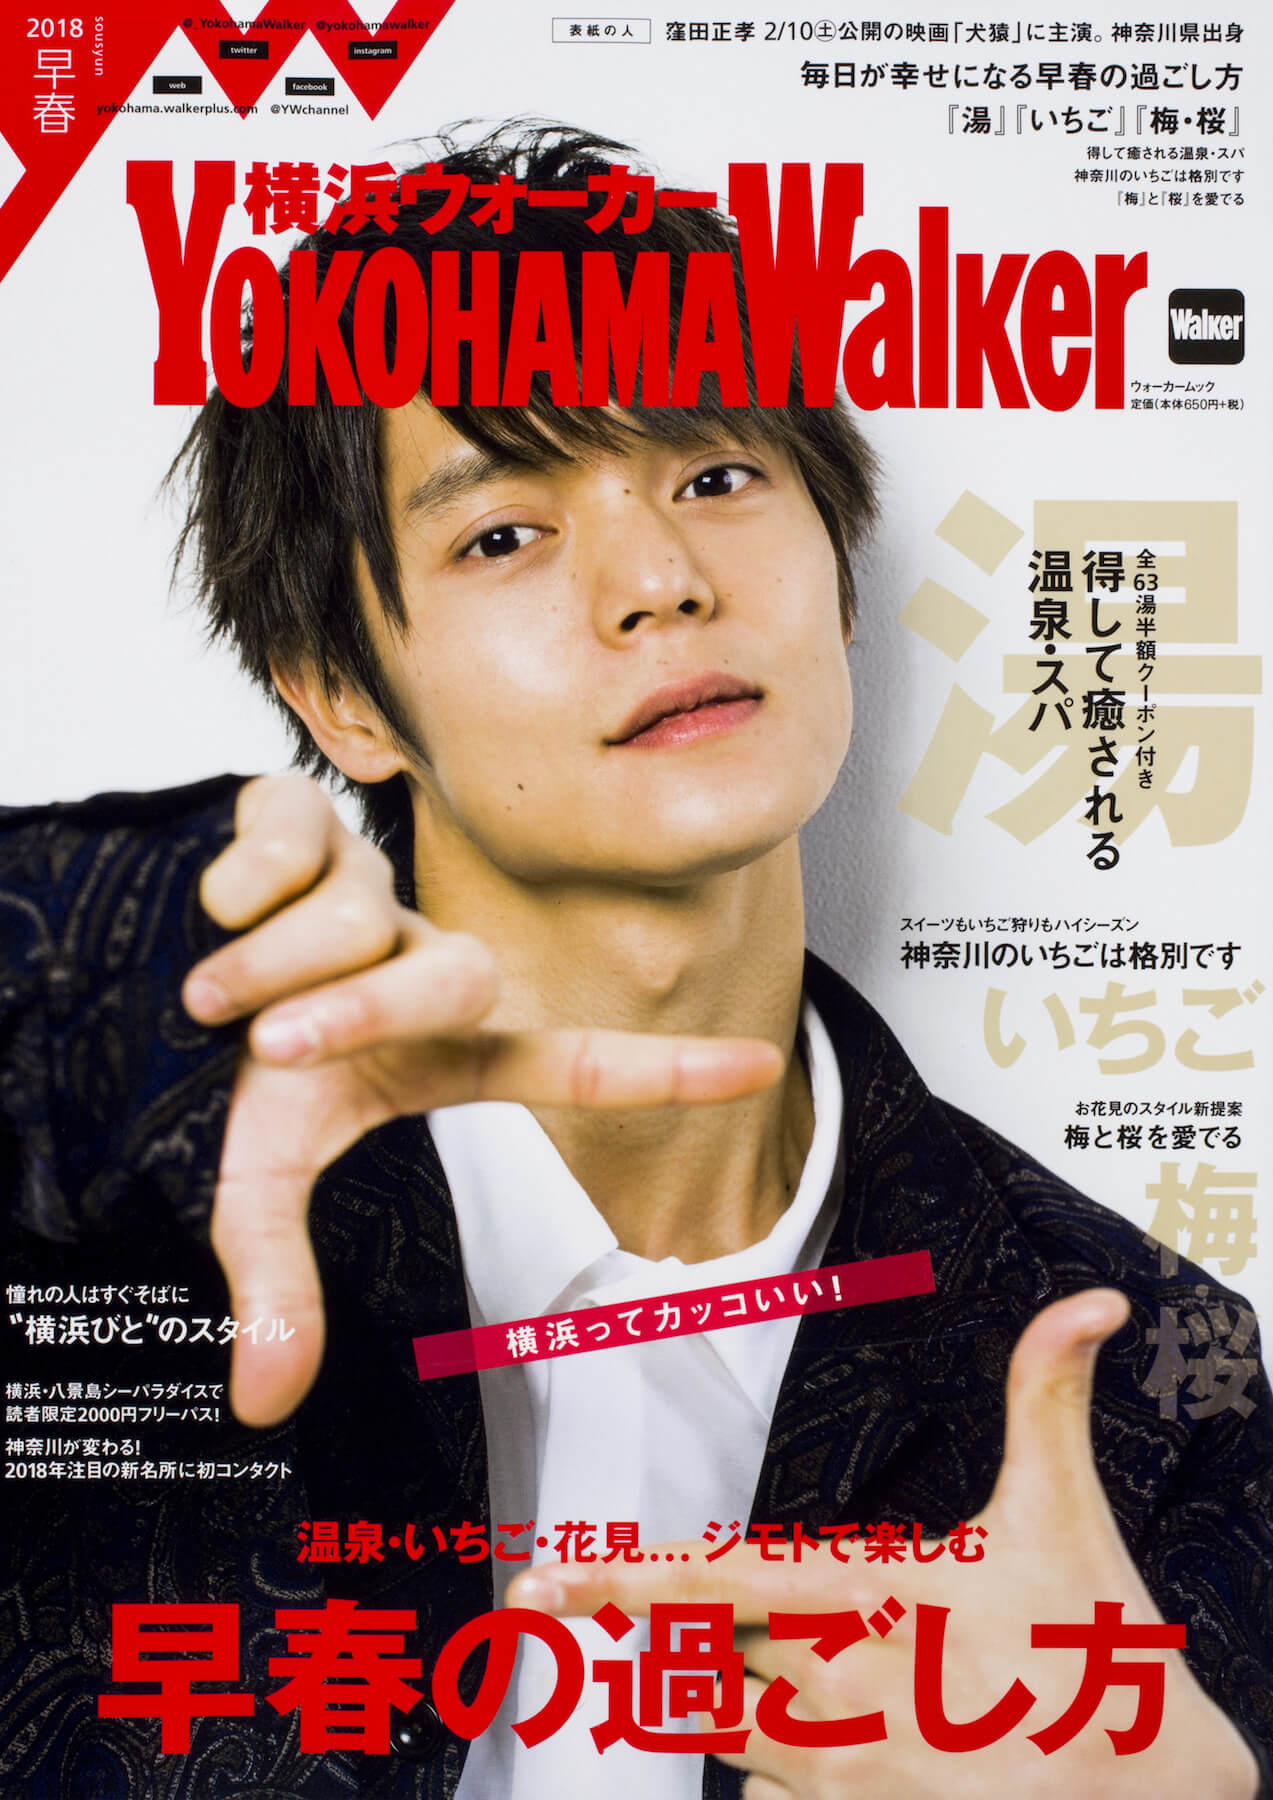 伊藤かりんの 横浜ウォーカー 人気連載が新章突入 横浜ってカッコいい をテーマに新装刊 Nogizaka Journal